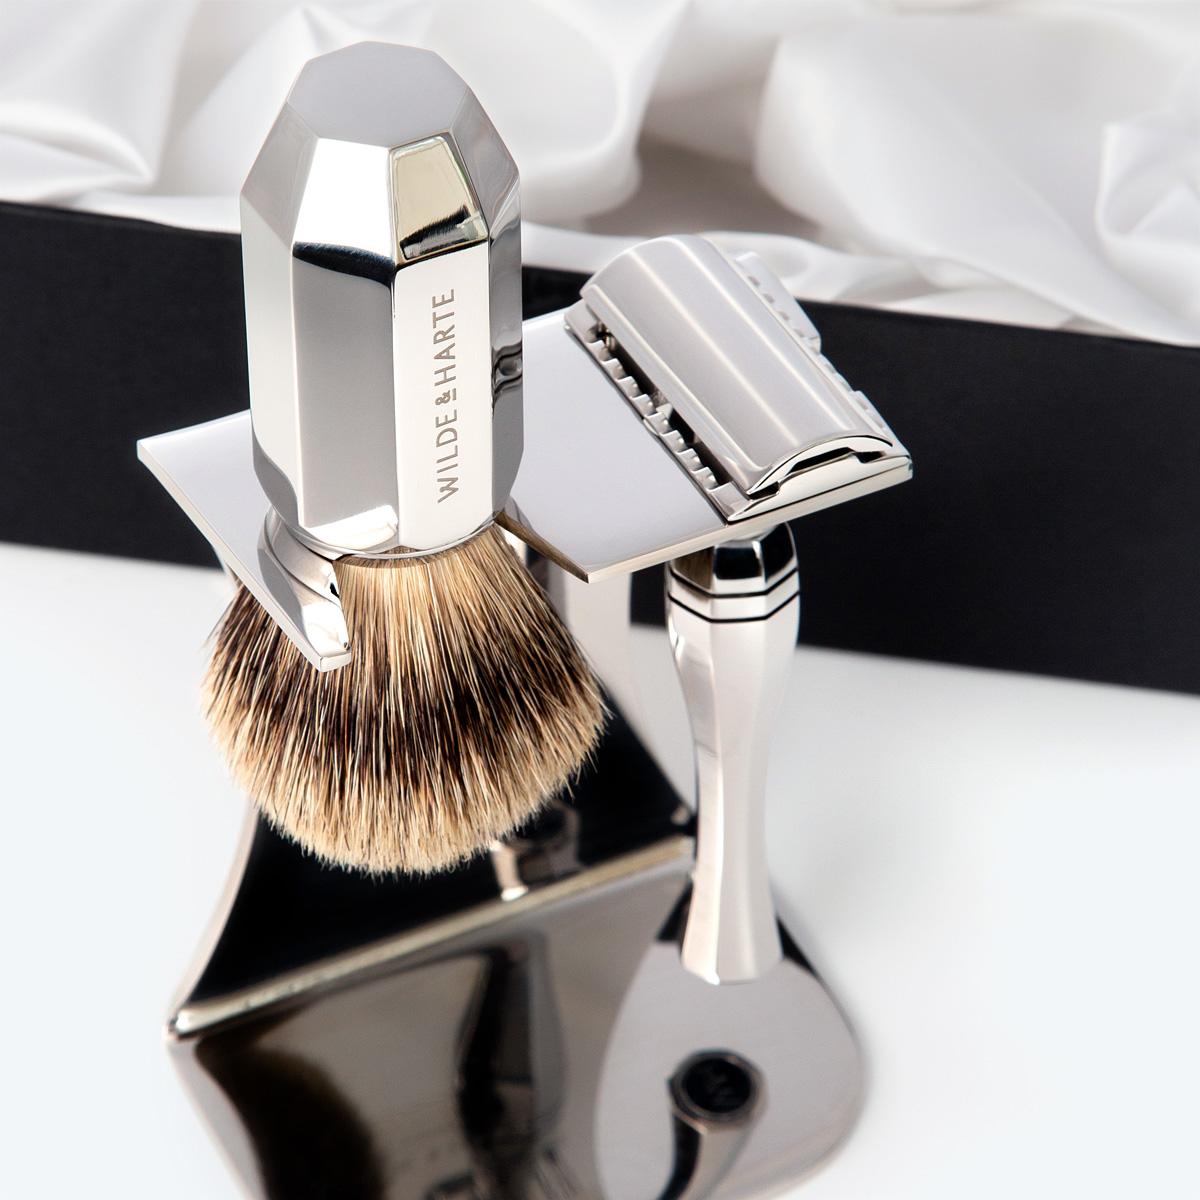 stainless steel traditional design razor and badger hair shaving brush gift set